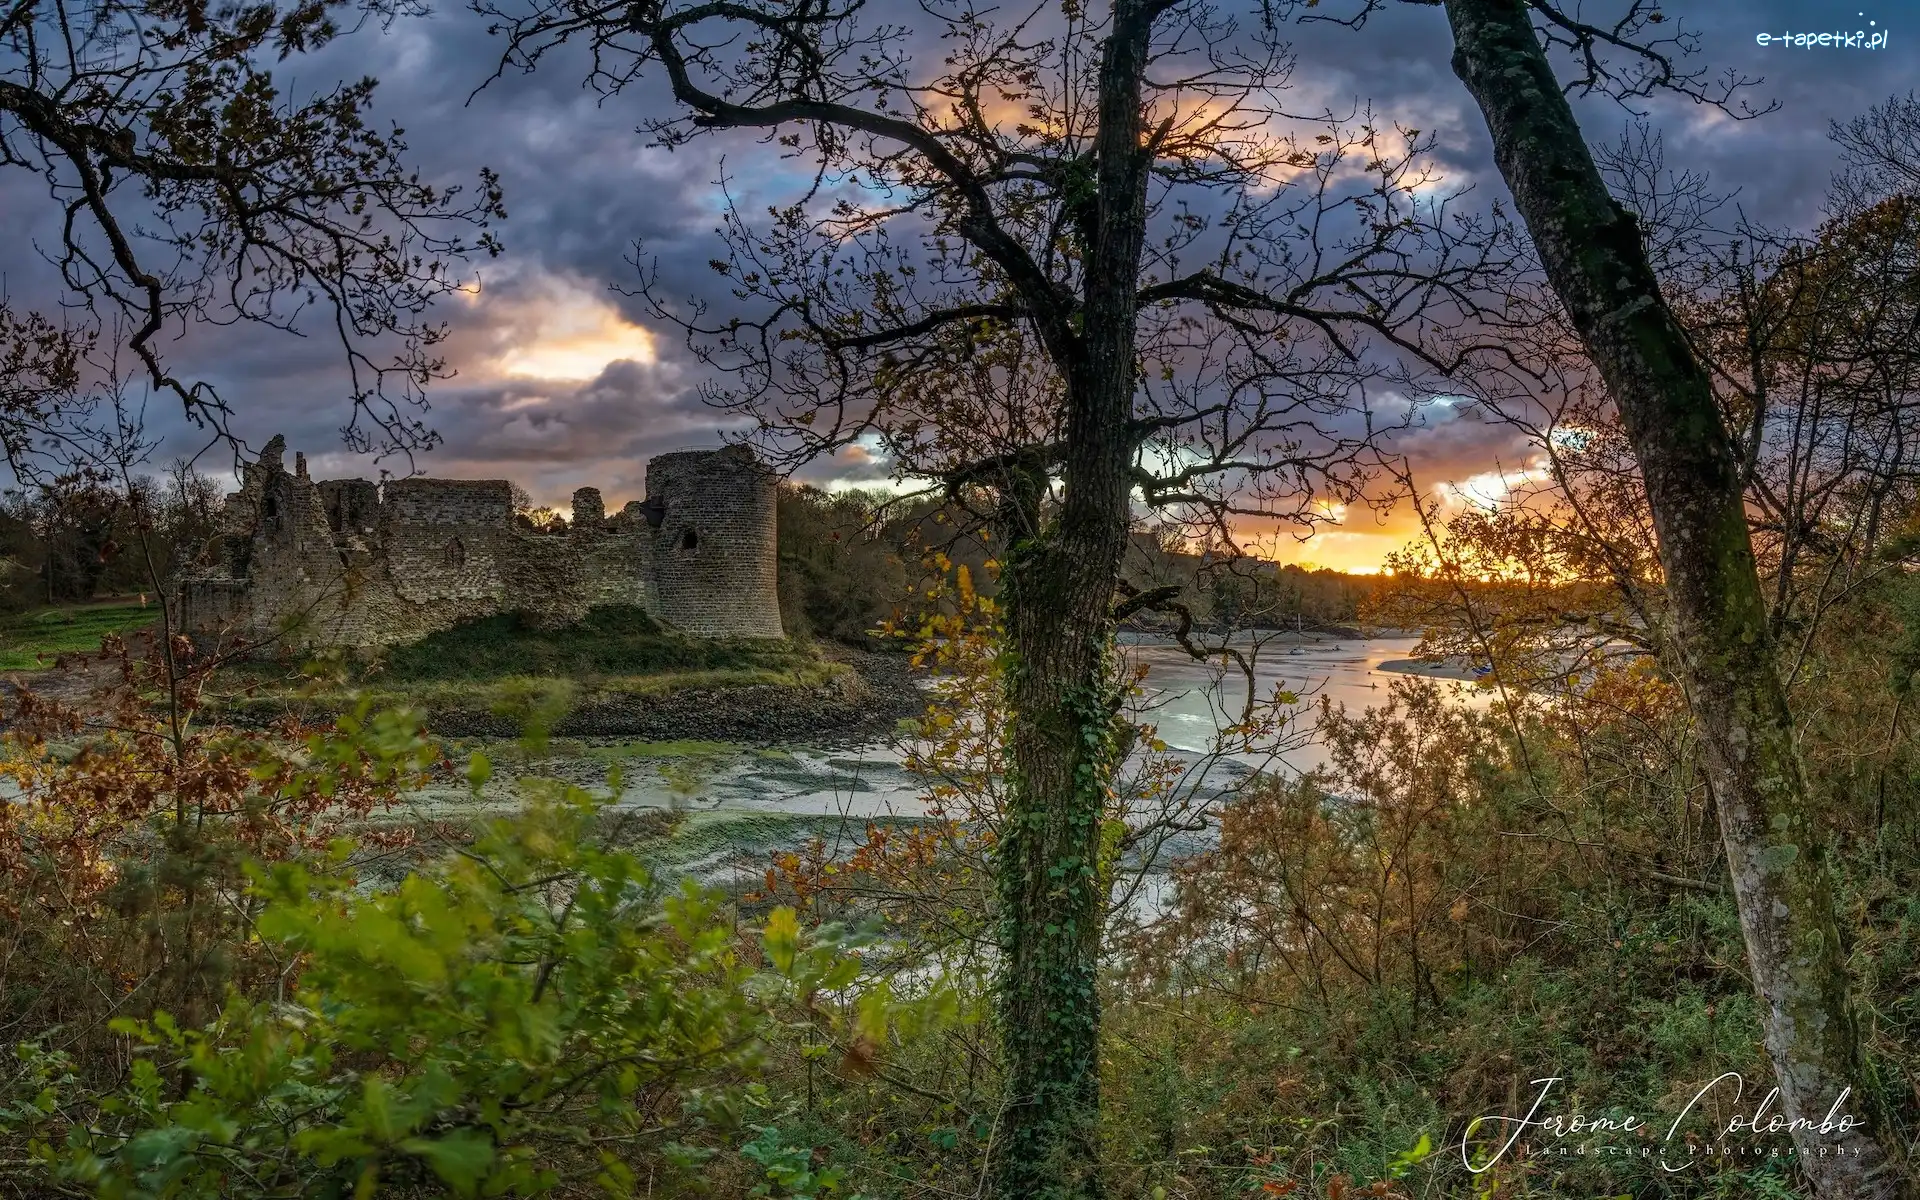 Ruiny, Bretania, Rzeka Arguenon, Drzewa, Crehen, Zamek, Chateau du Guildo, Francja